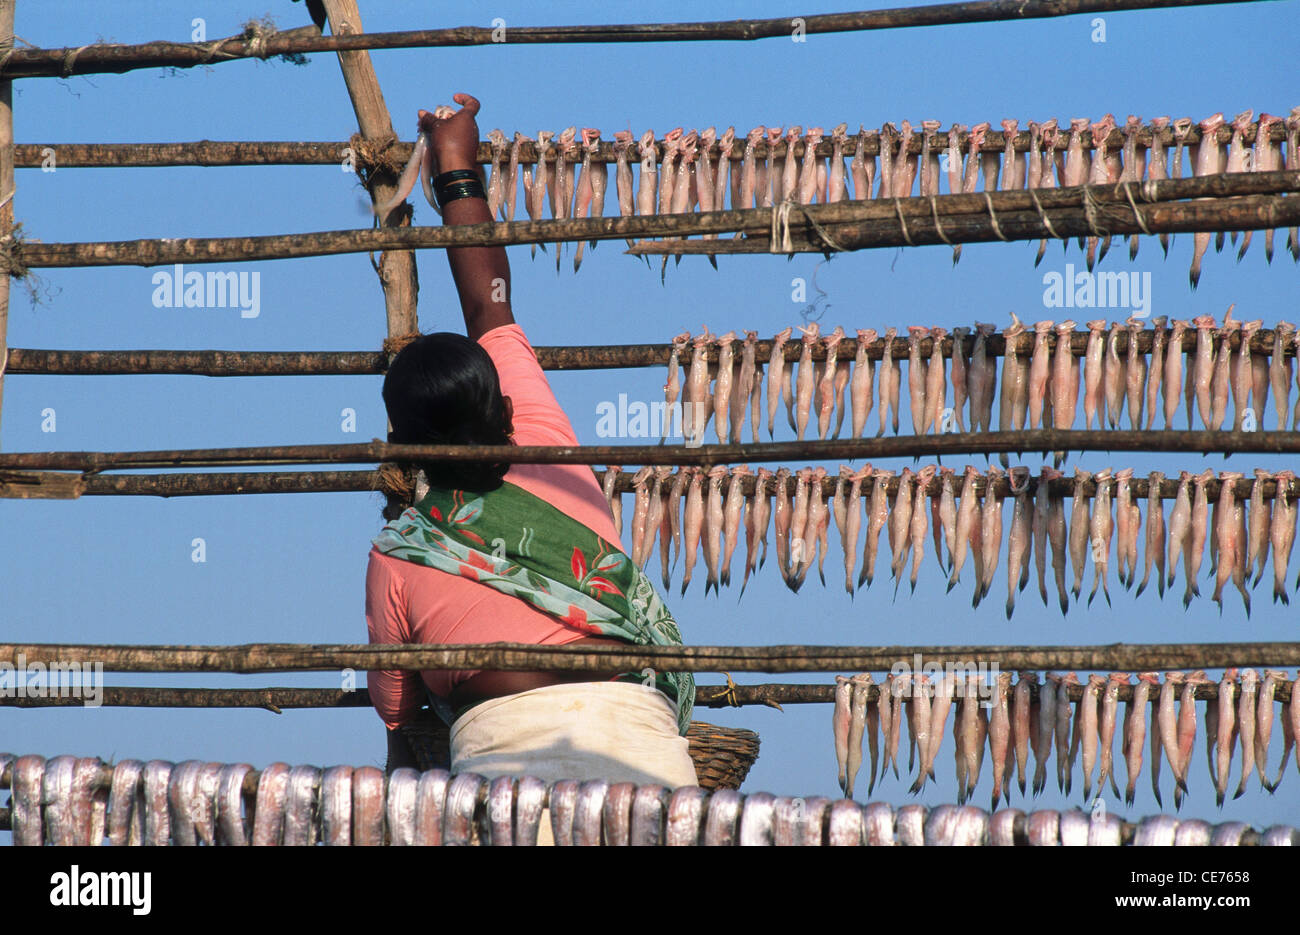 Pêcheur accrochant des poissons pour sécher ; alibagh ; maharashtra ; inde ; asie Banque D'Images